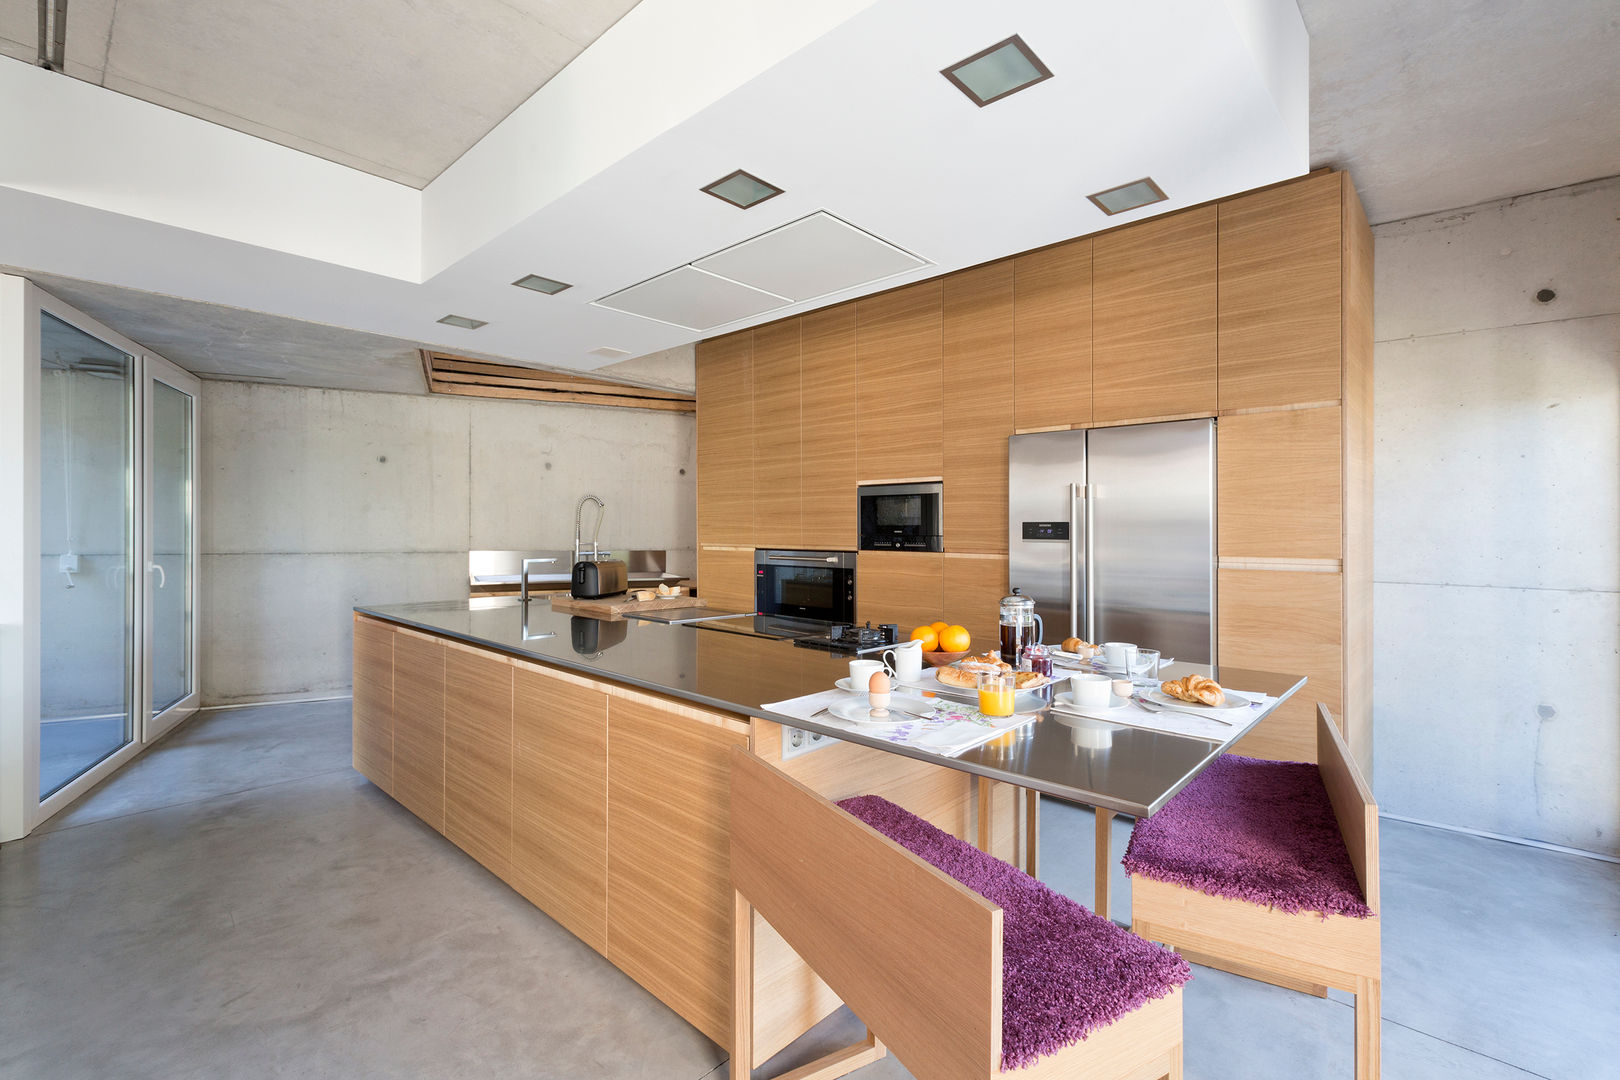 dezanove house designed by iñaki leite - kitchen Inaki Leite Design Ltd. Cocinas de estilo moderno Mesadas de cocina